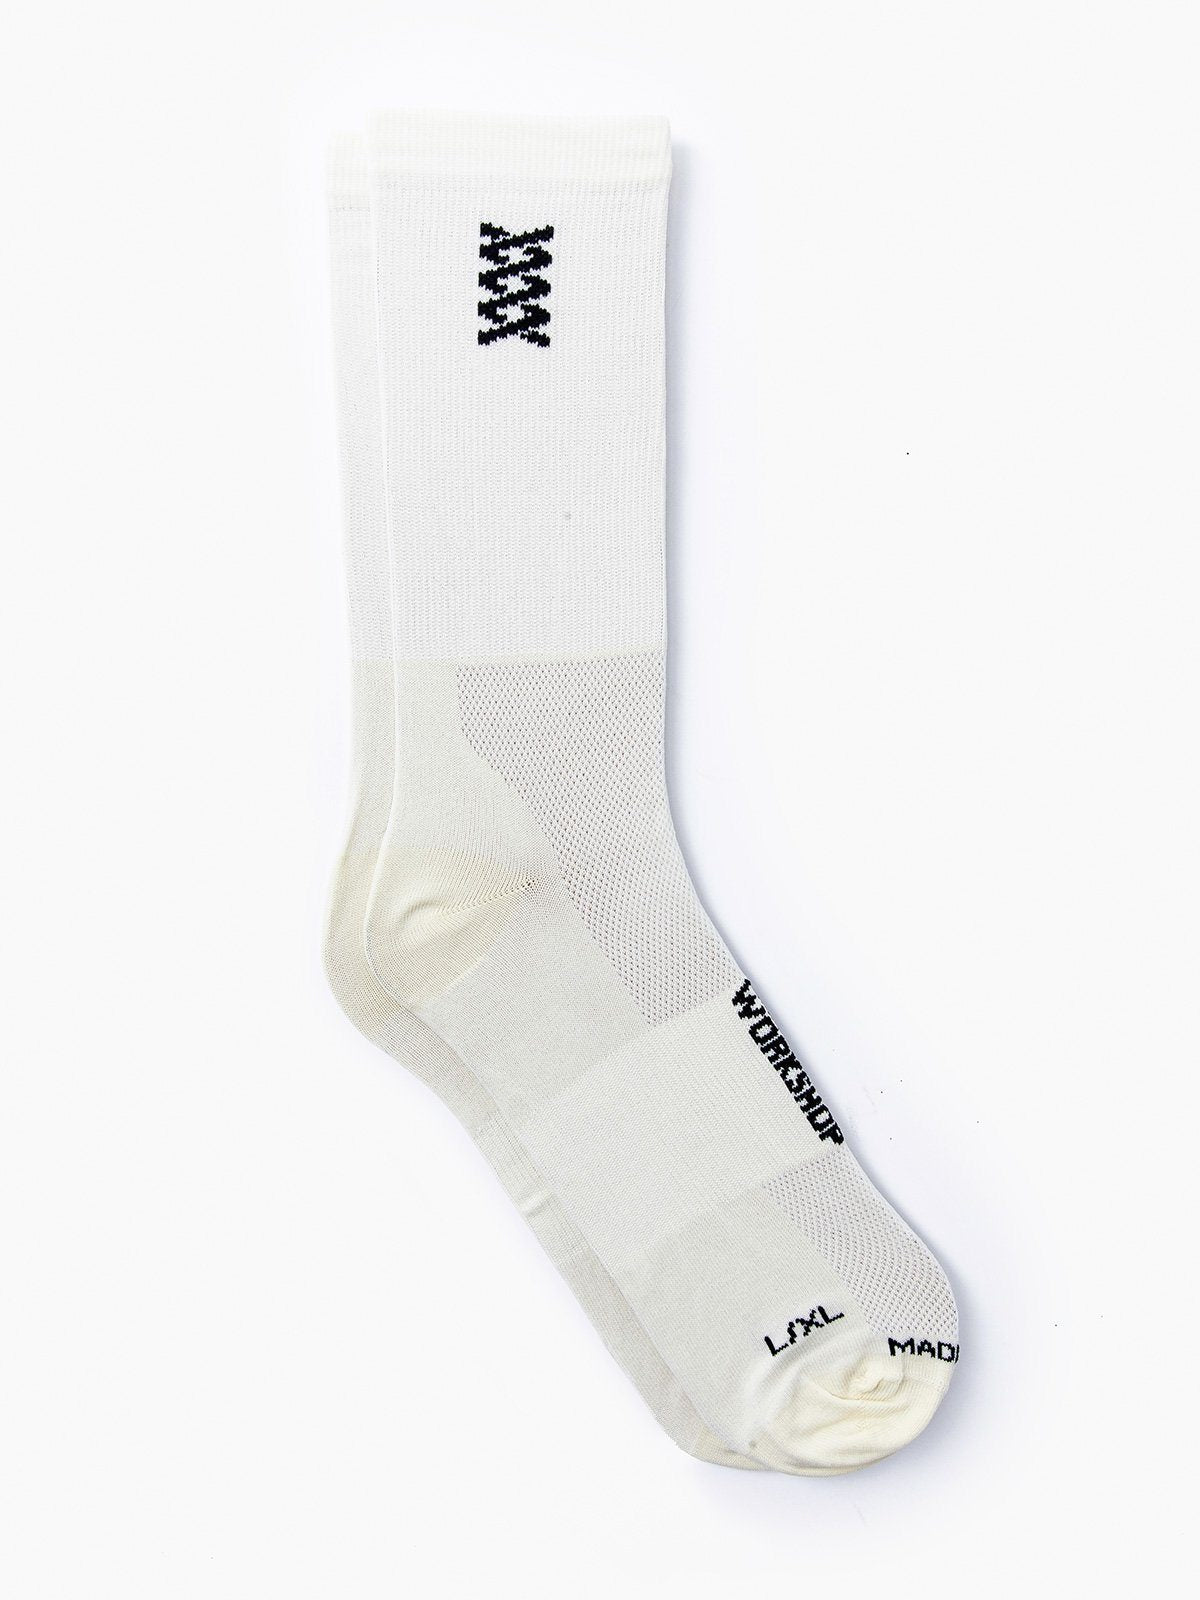 Mission Pro Socks by Mission Workshop - Weerbestendige tassen & technische kleding - San Francisco & Los Angeles - Gemaakt om te weerstaan - Voor altijd gegarandeerd